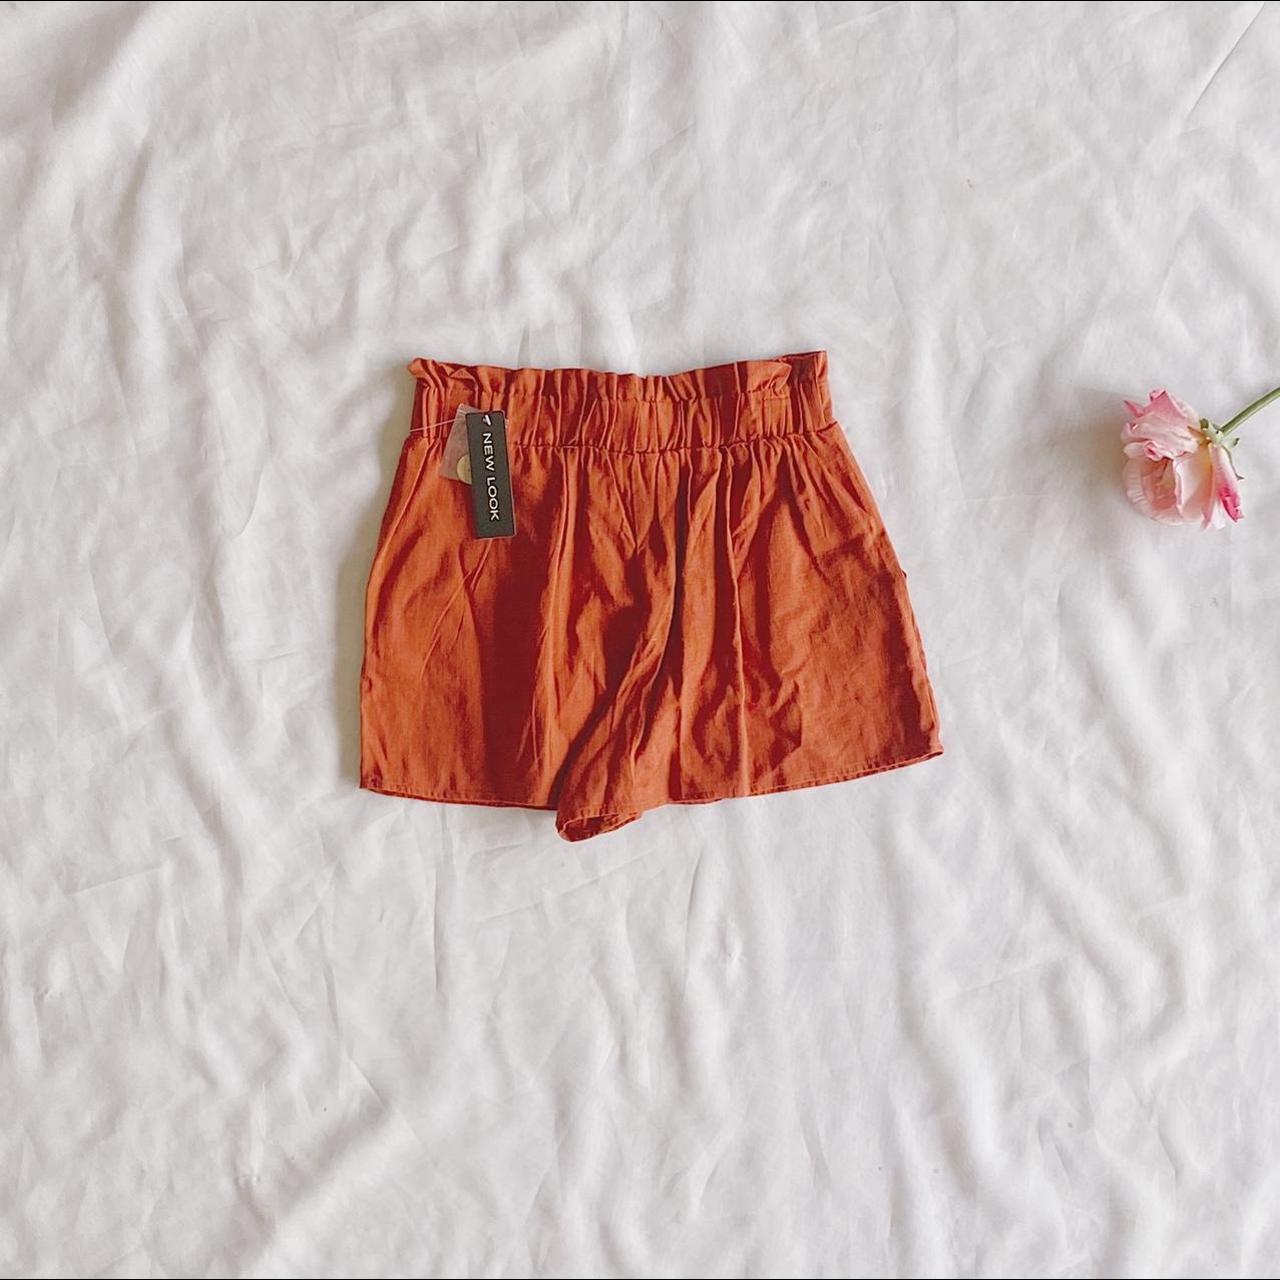 Product Image 2 - Burnt Orange New Look Shorts
Waist